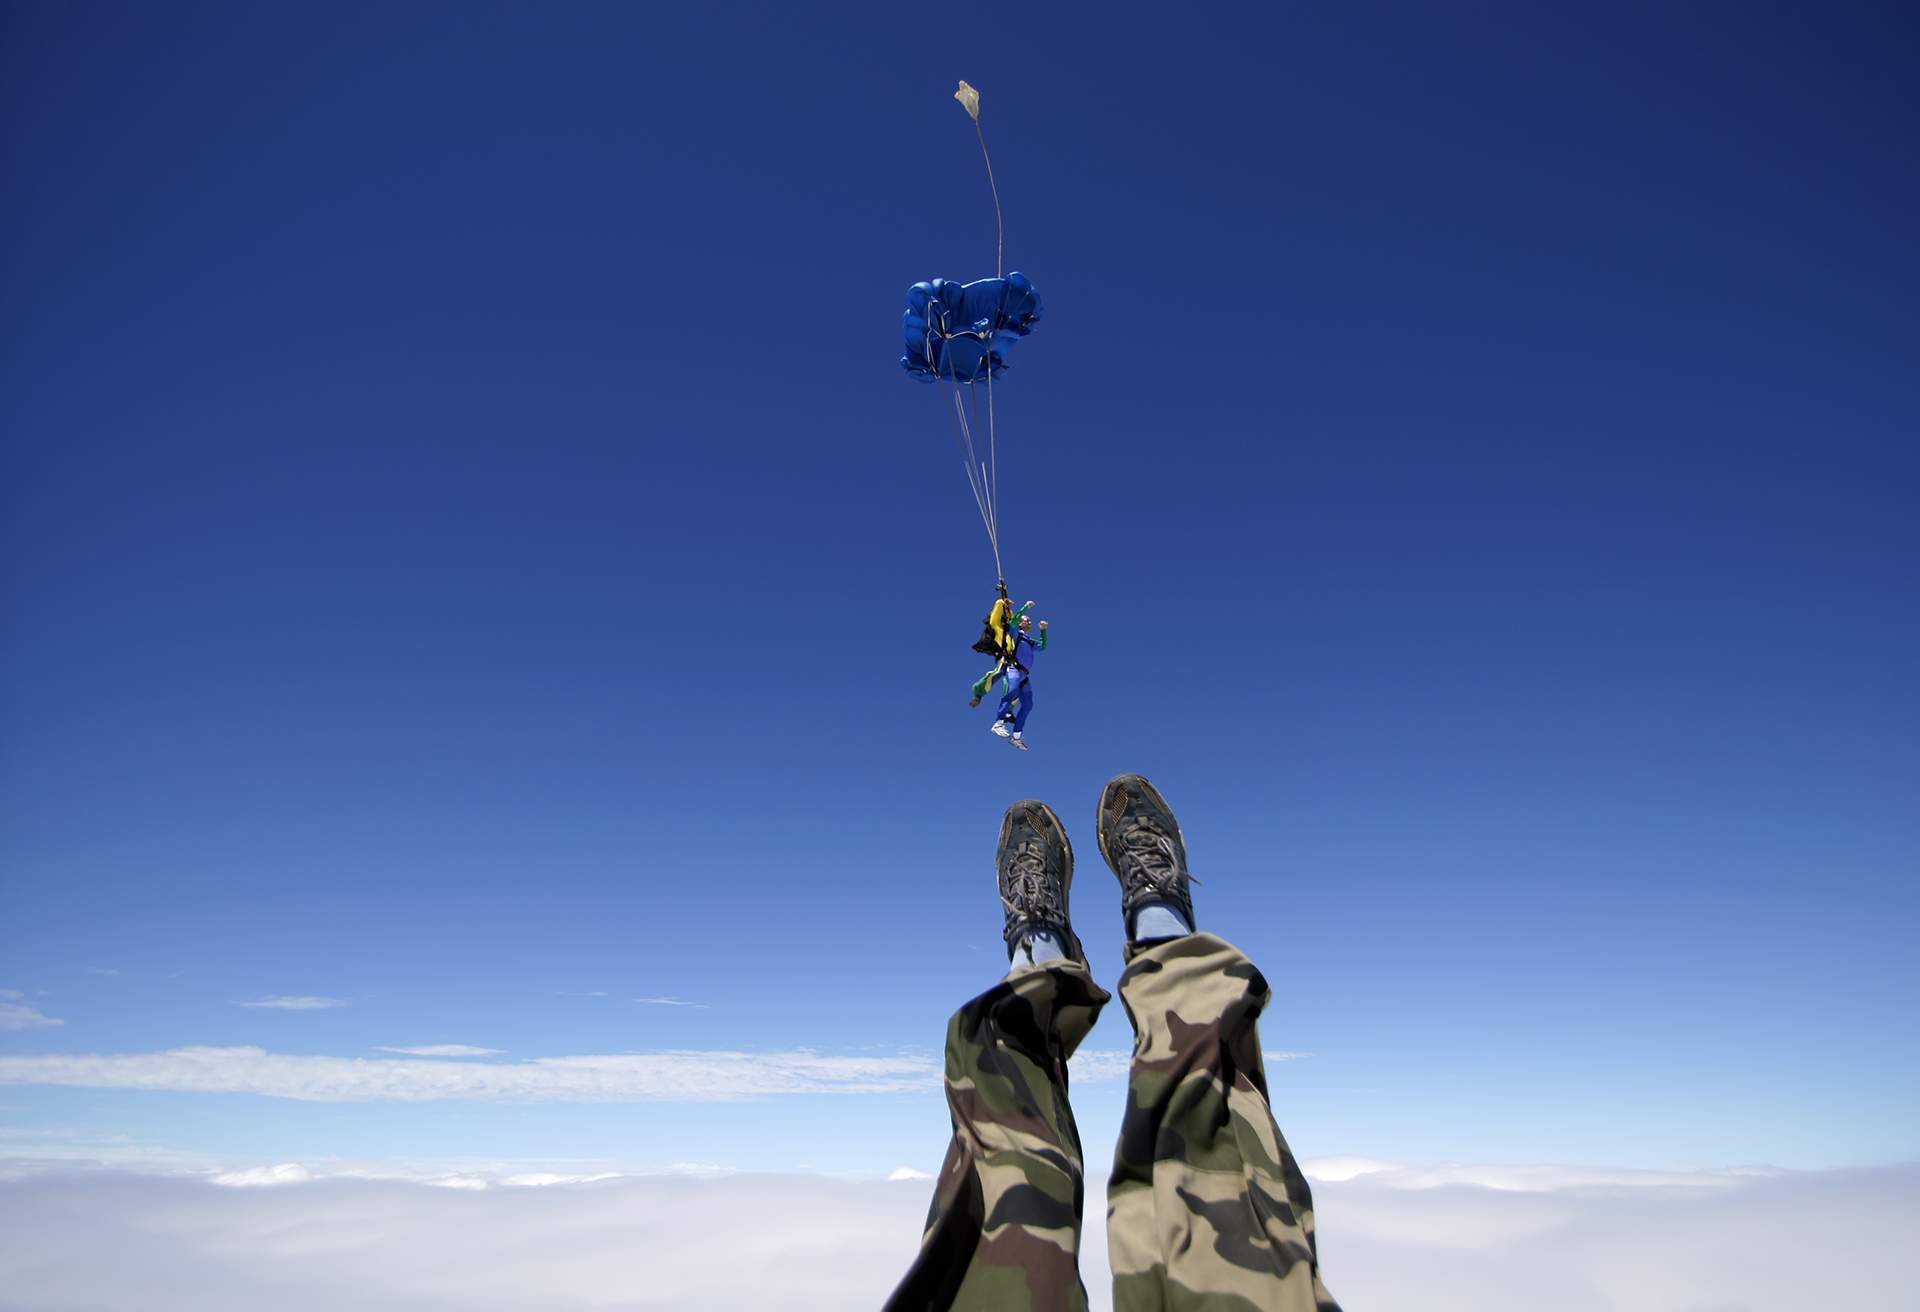 Skydiving in Spain